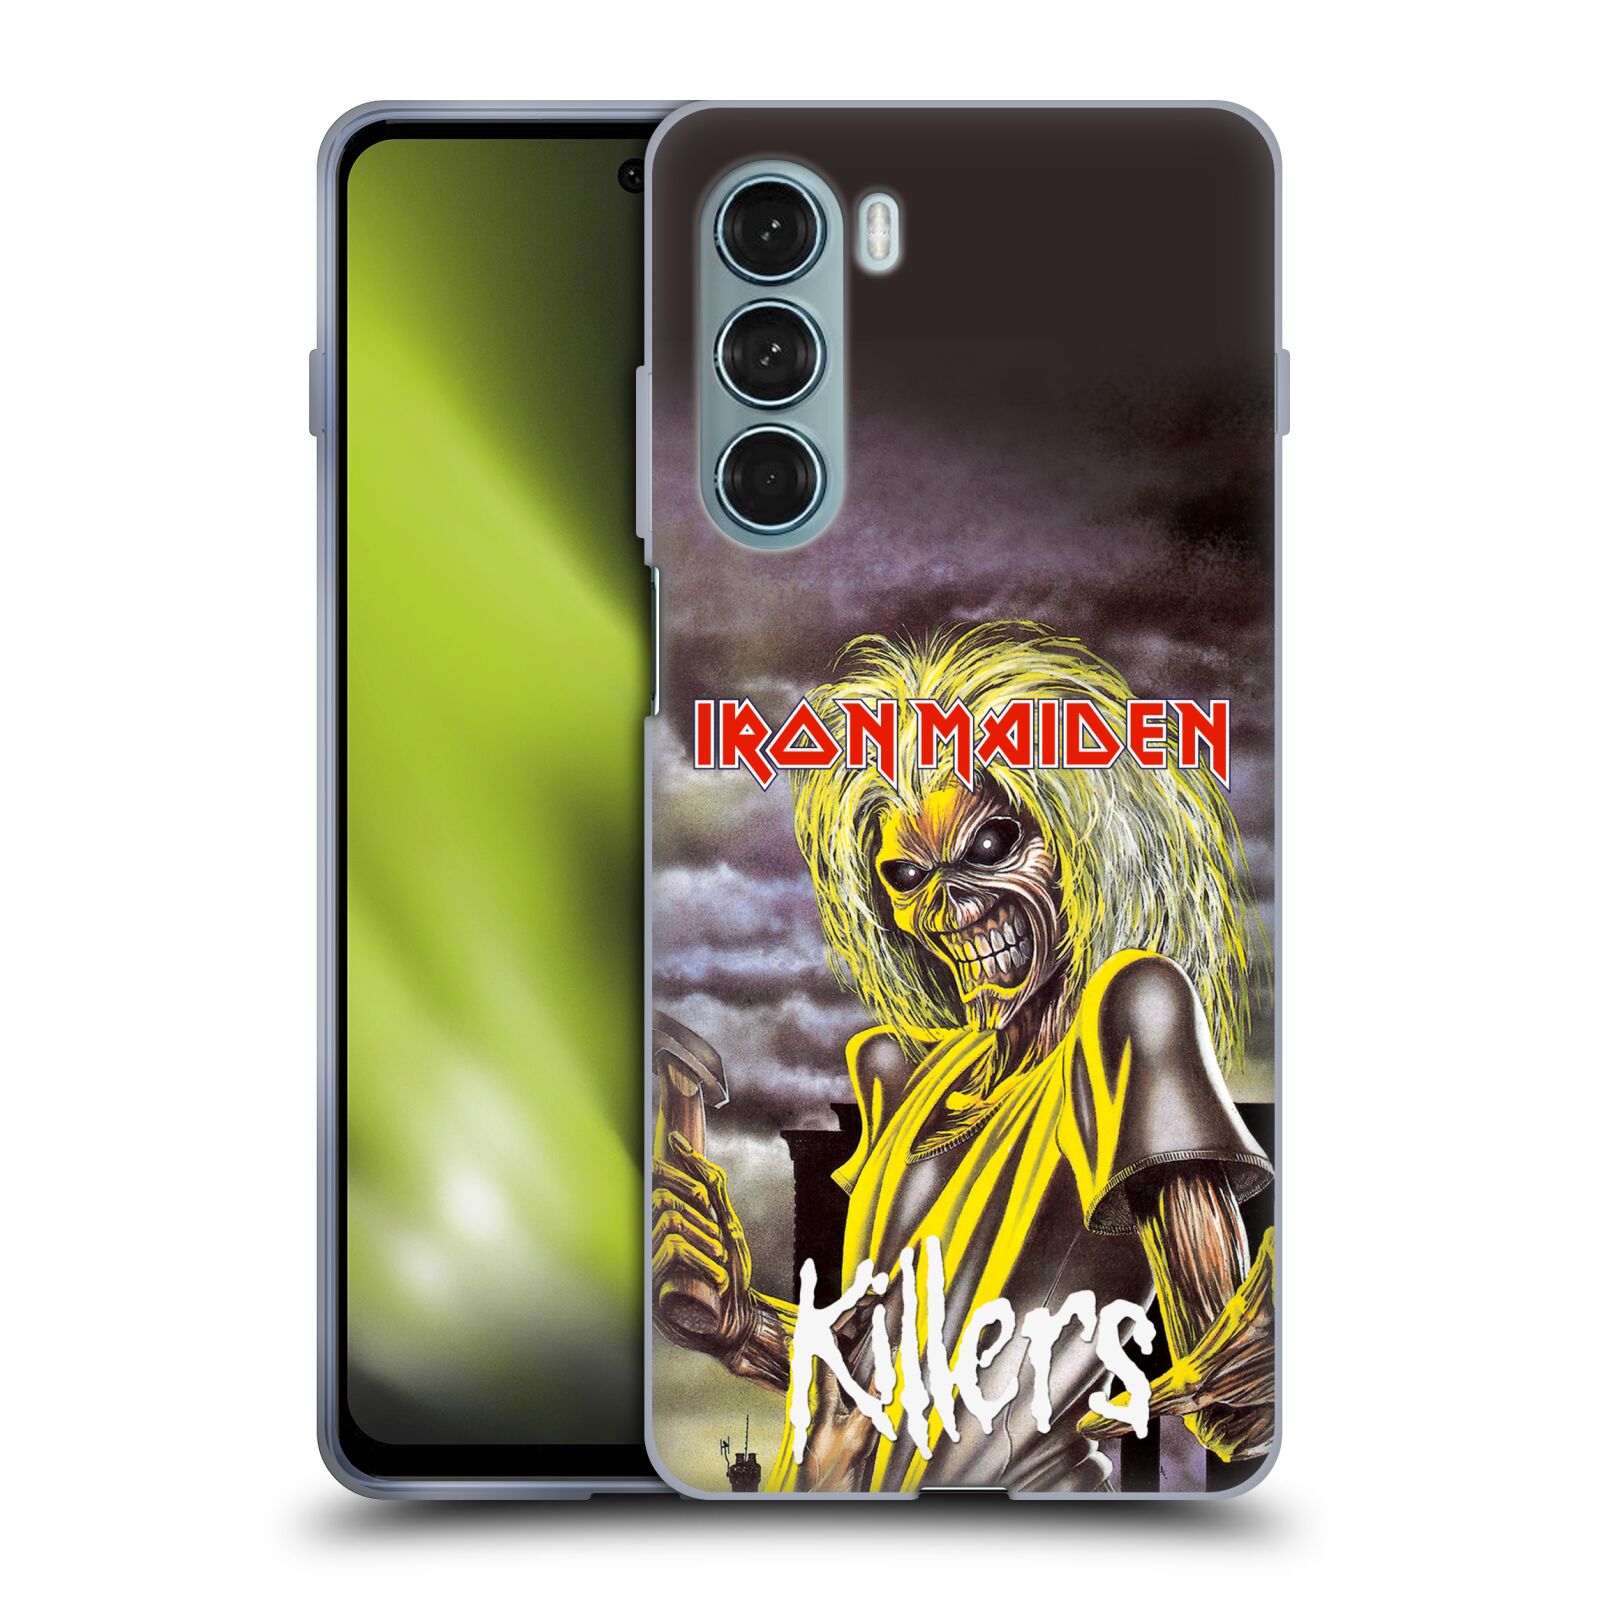 Silikonové pouzdro na mobil Motorola Moto G200 5G - Head Case - Iron Maiden - Killers